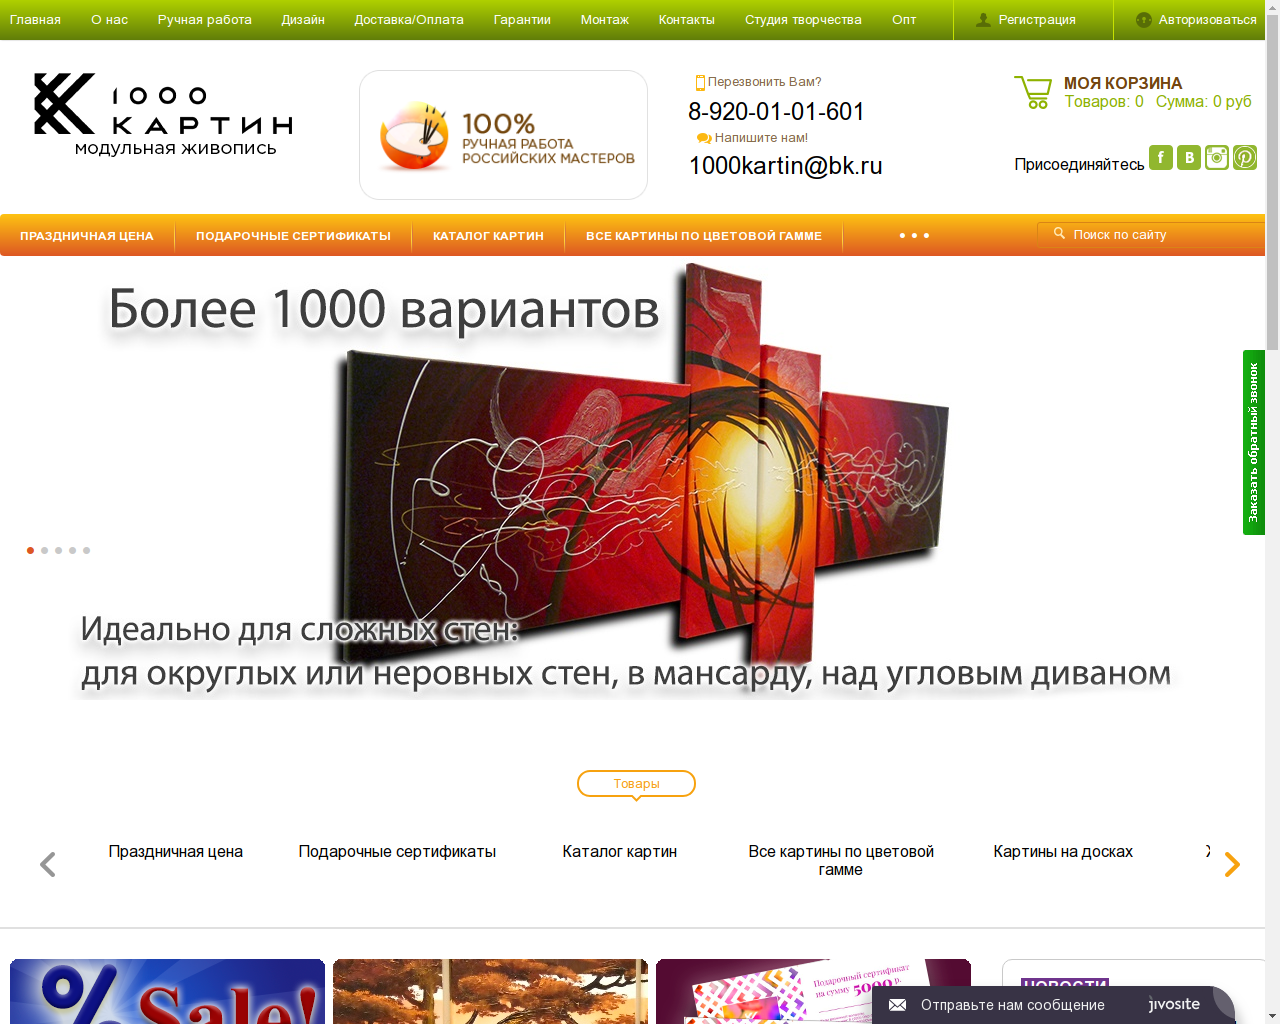 Изображение сайта 1000картин.рф в разрешении 1280x1024